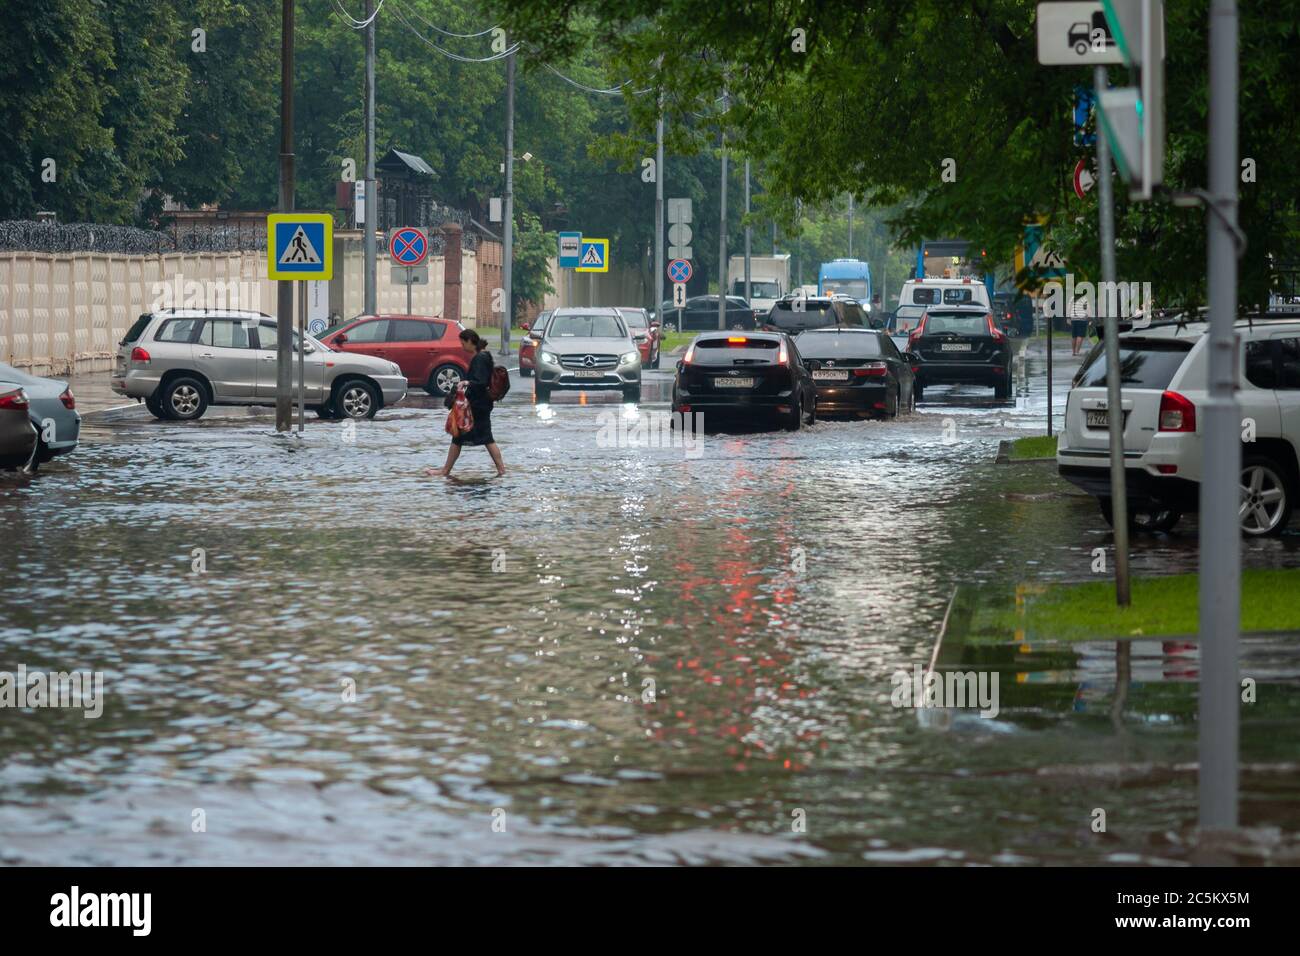 Moscou 18/06/2020 une femme traversant la rue inondée d'eau après de fortes pluies, voitures roulant par les inondations Banque D'Images